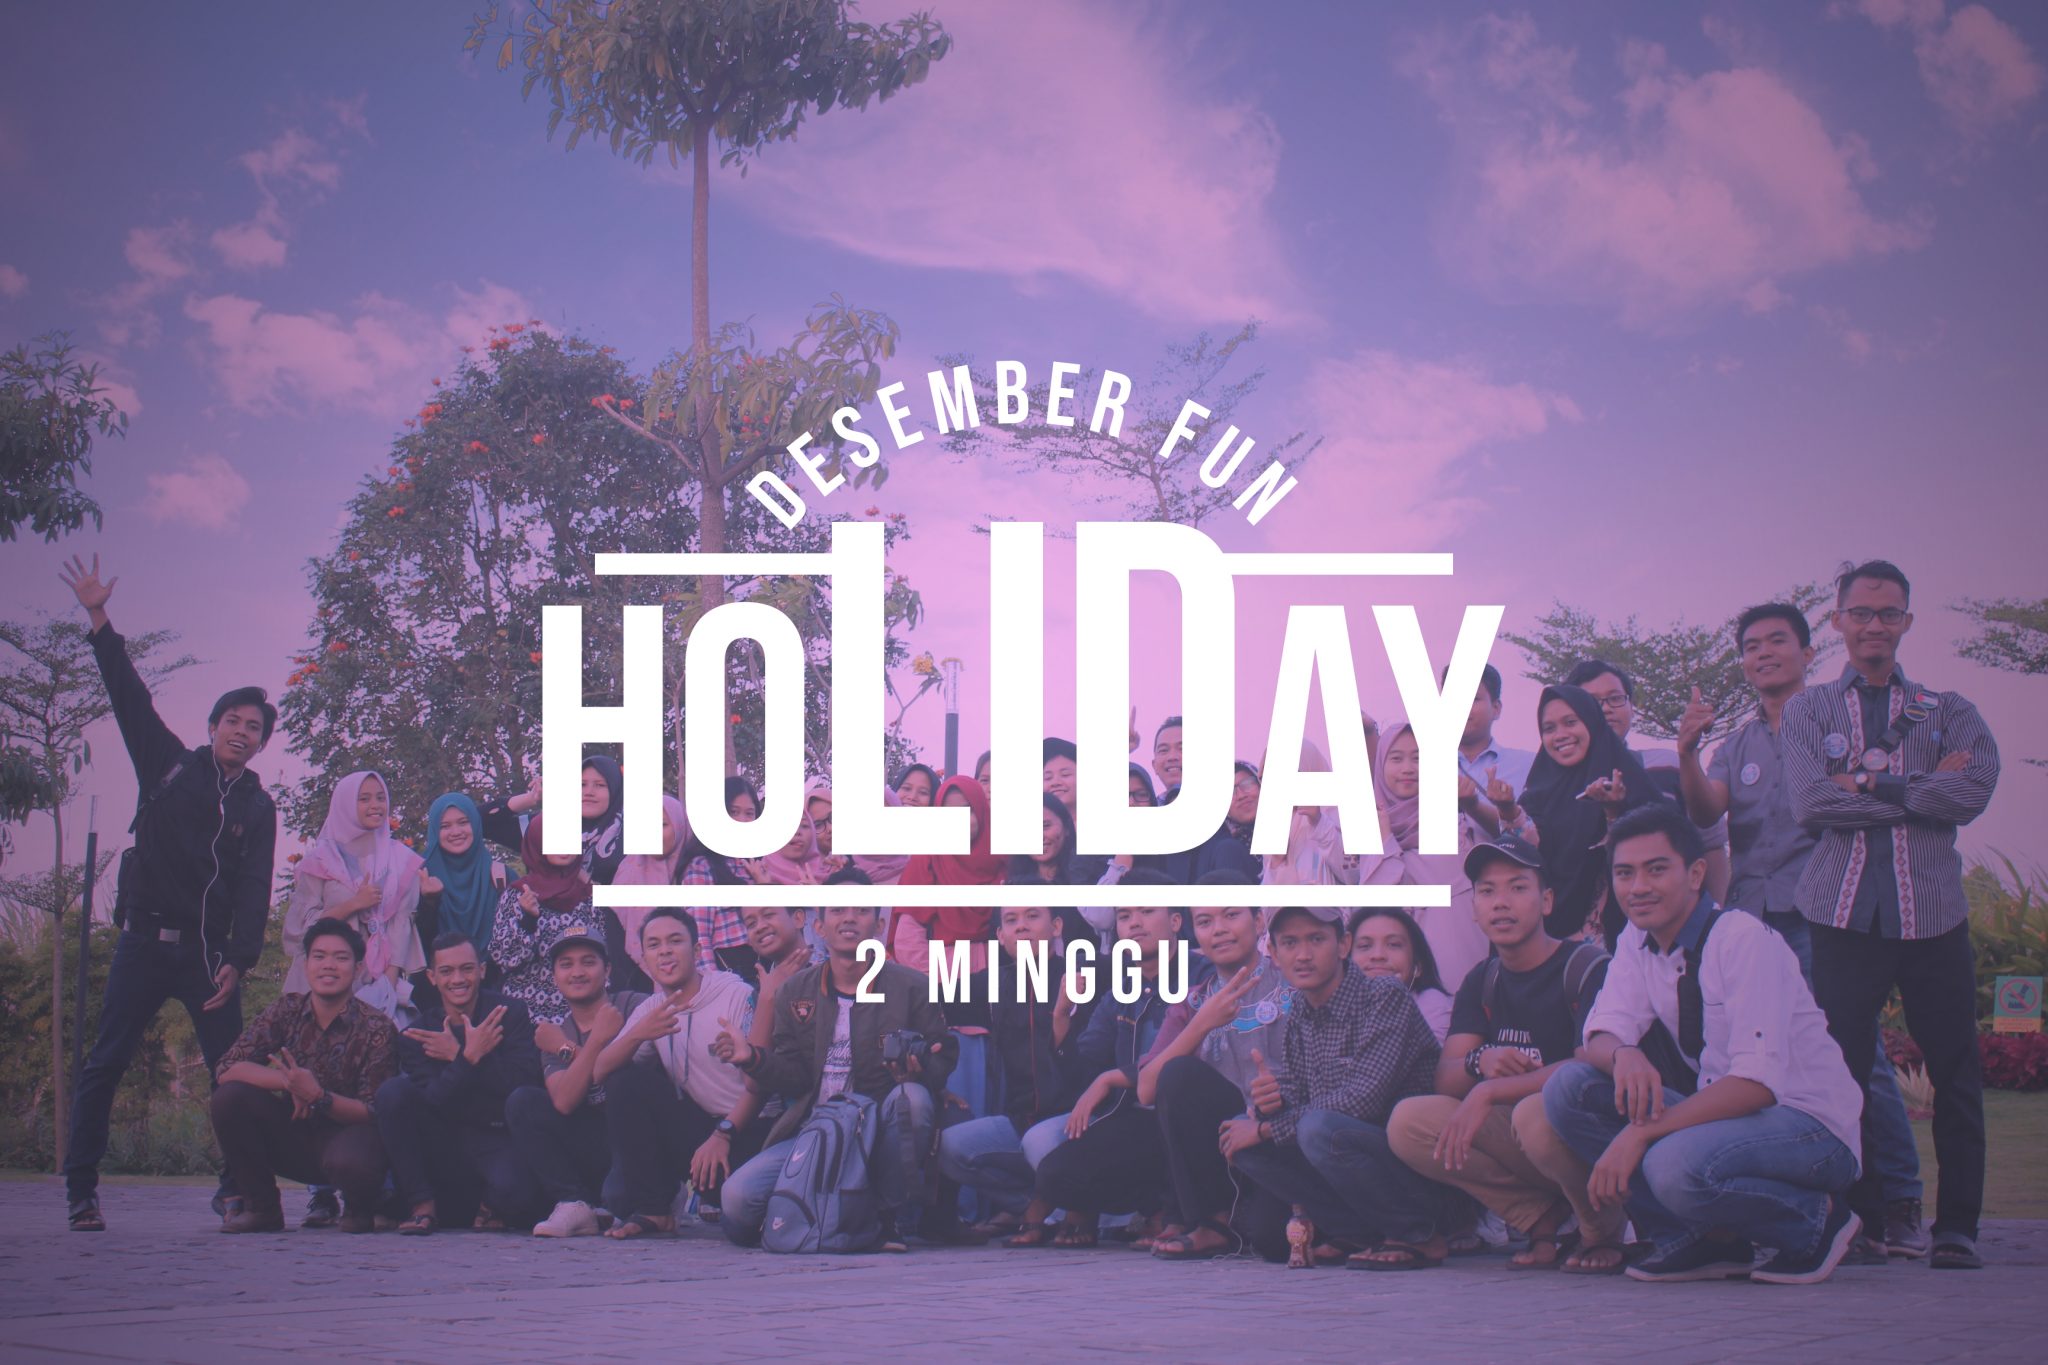 Desember Fun Holiday 2 Minggu kampung inggris